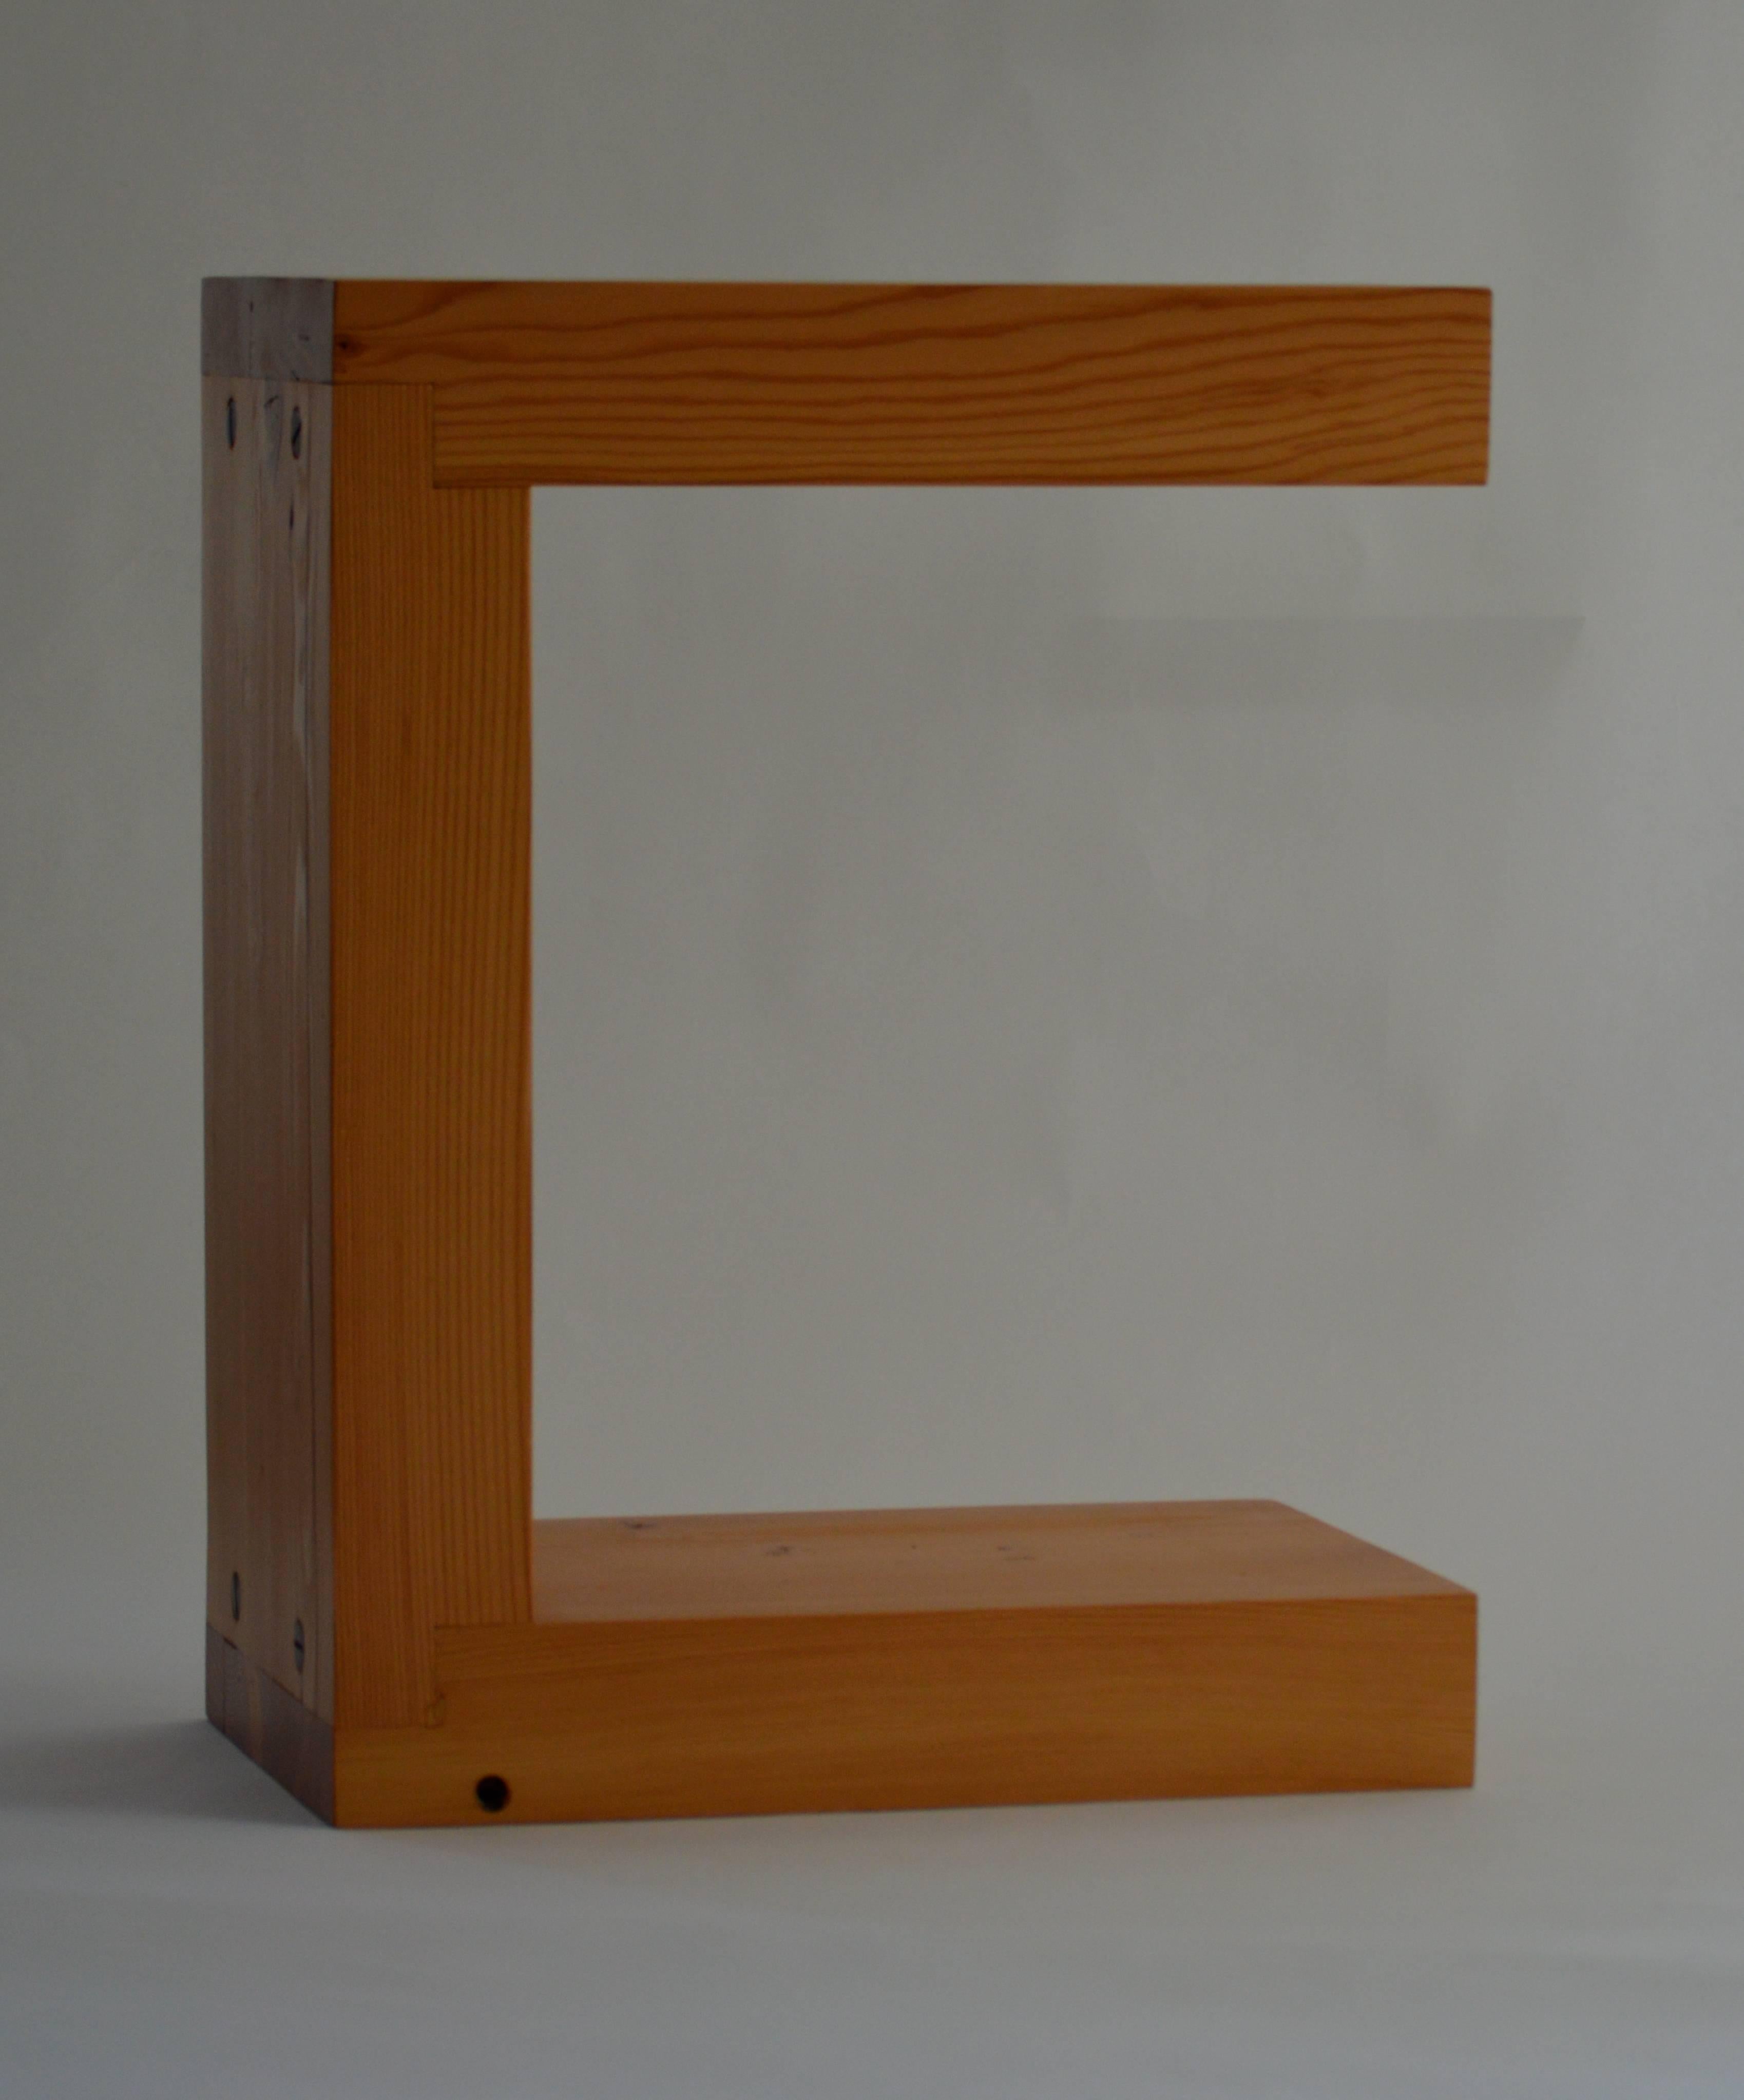 La table d'appoint en sapin, un design original proposé exclusivement par Vermontica, est un siège ou une table d'appoint contemporain minimaliste conçu et produit dans le Vermont par Scott Gordon. Fabriquée en sapin de Douglas de 3